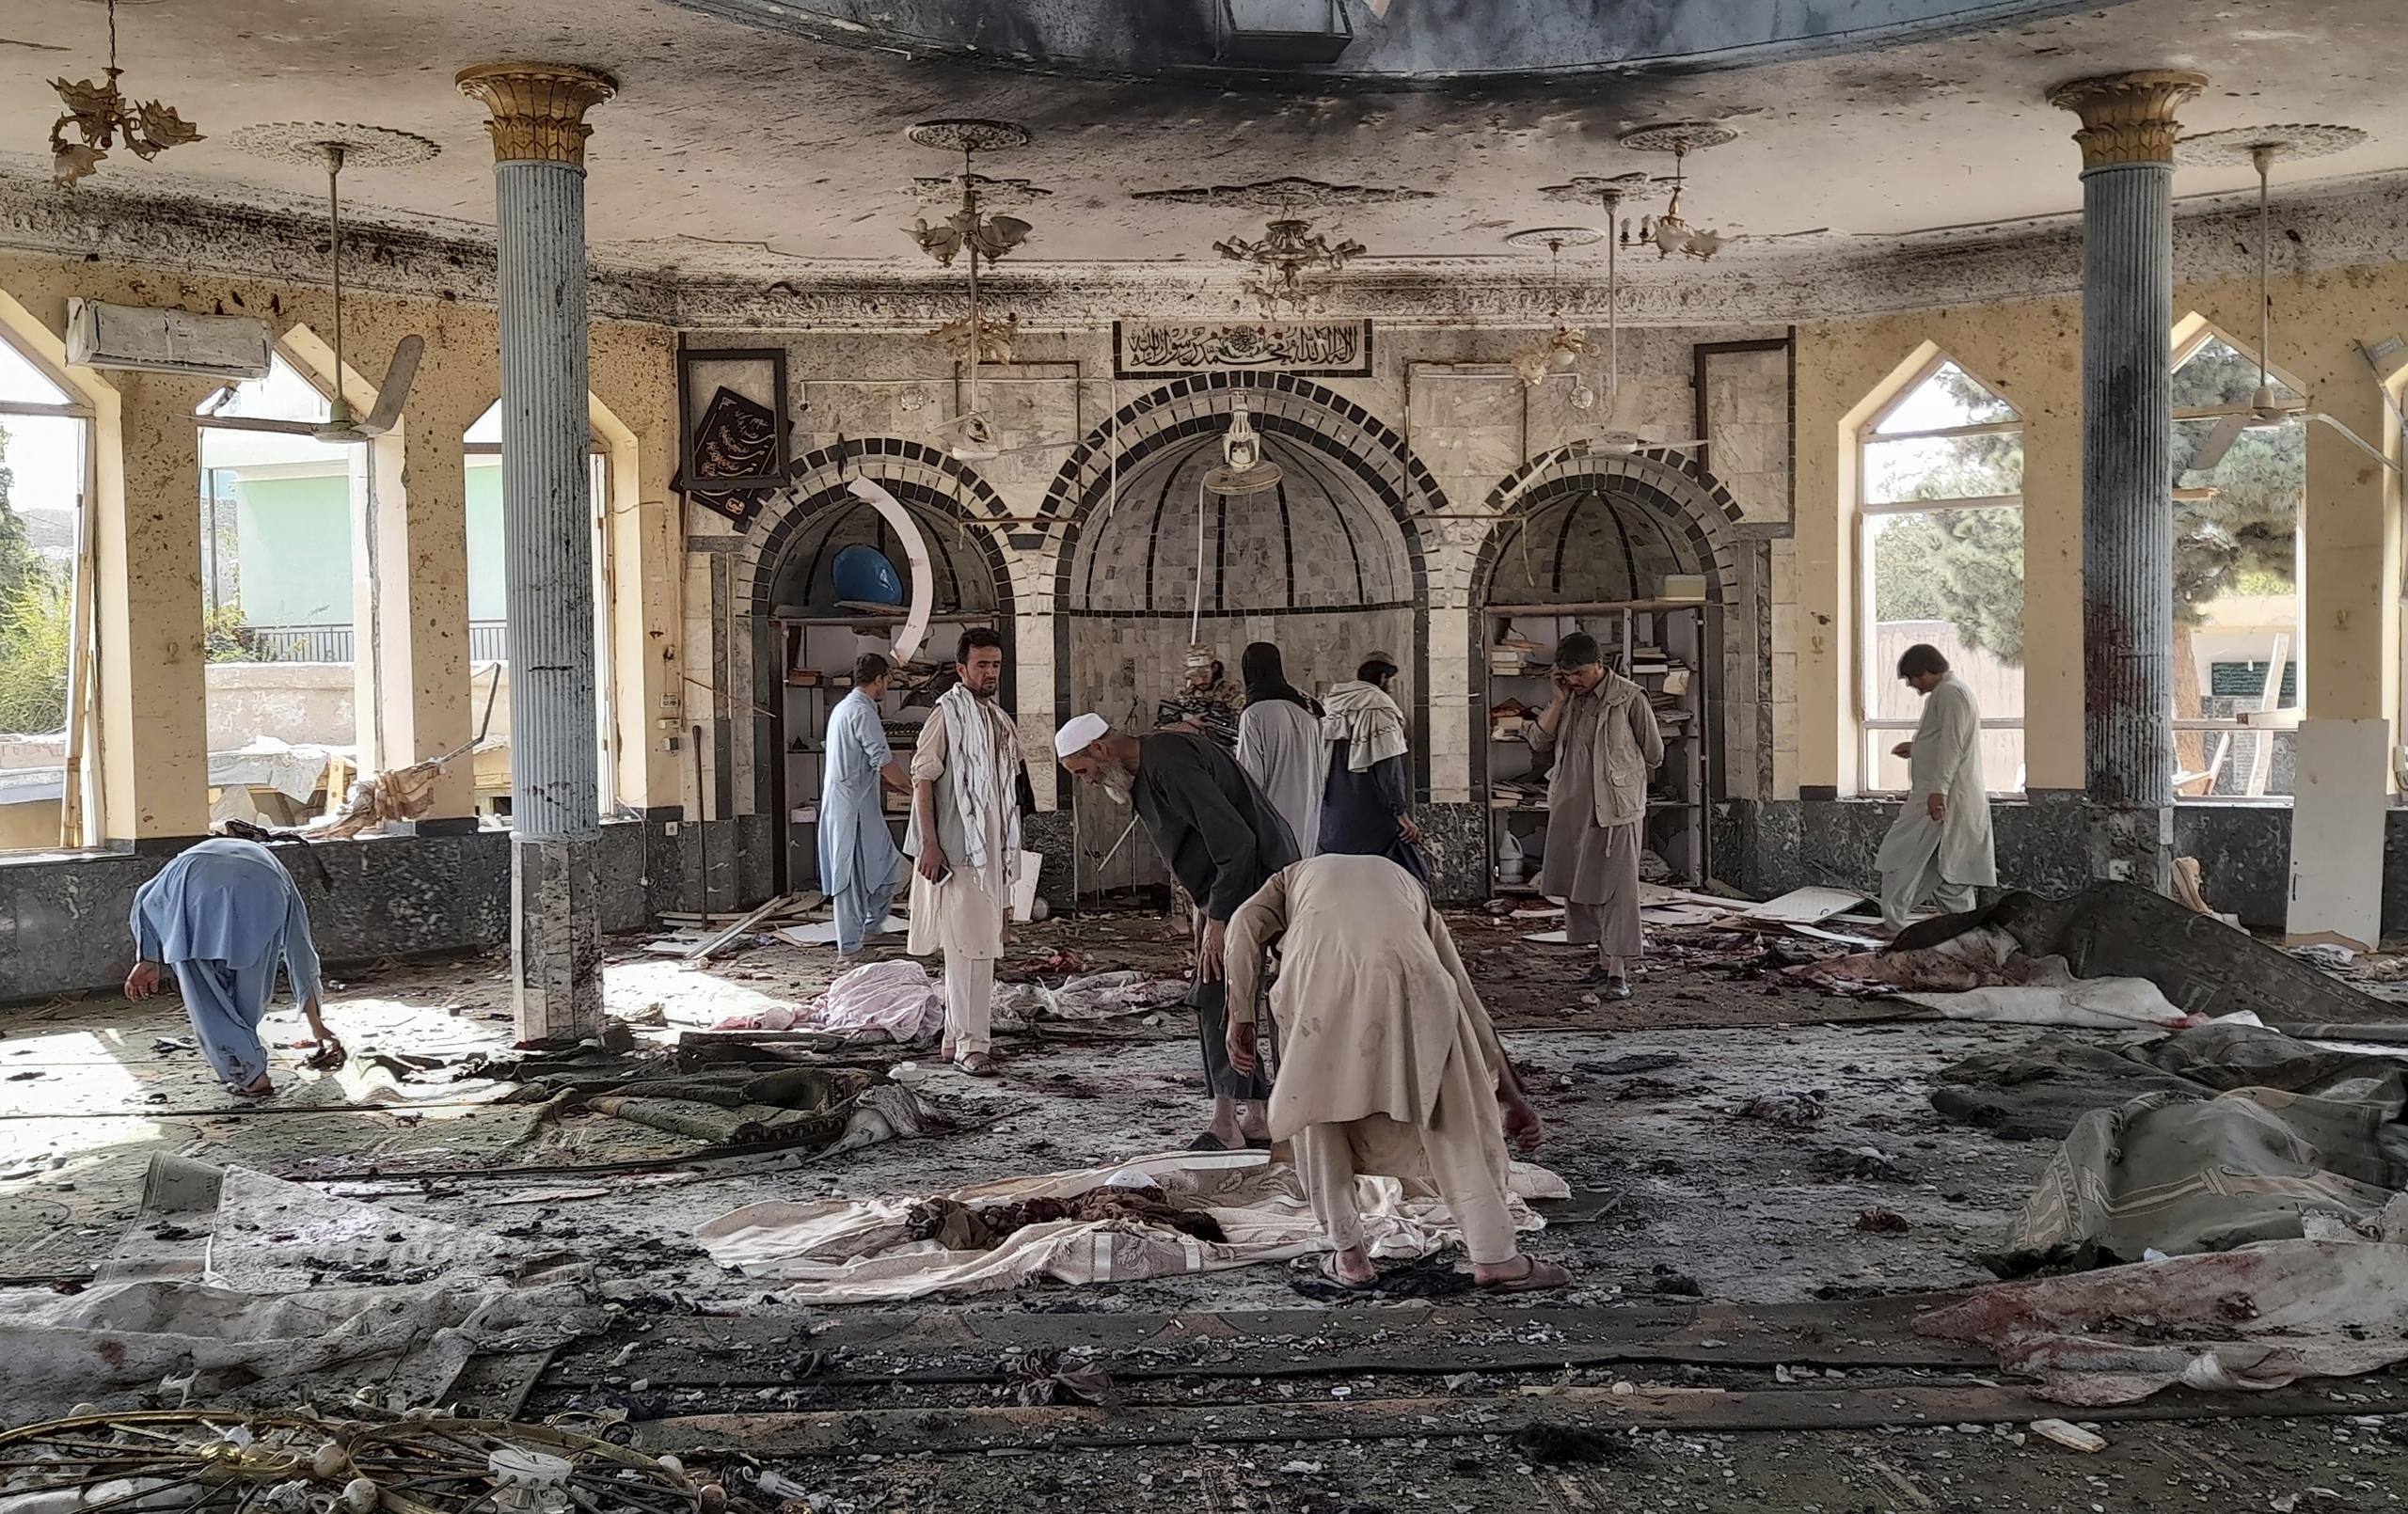 Un atentado suicida ayer viernes reclamado por el Estado Islámico provocó 46 muertos de la minoría chií en una mezquita de Kunduz.